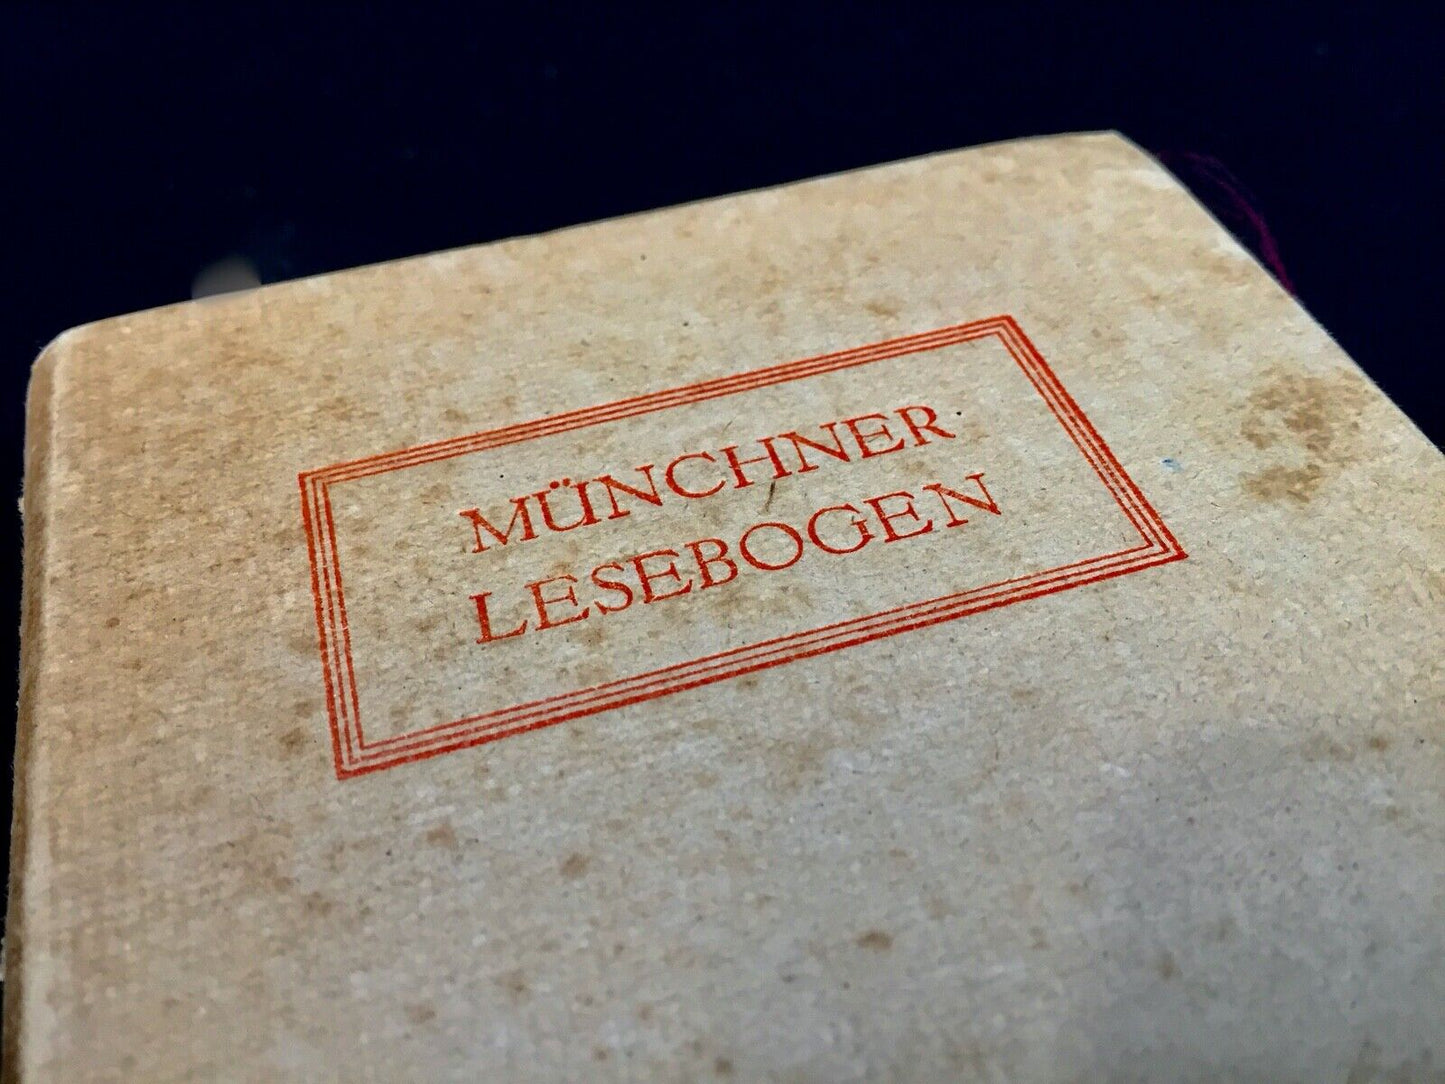 A Job Lot of Vintage German Comics / Book by Münchner Lesebogen / Antique